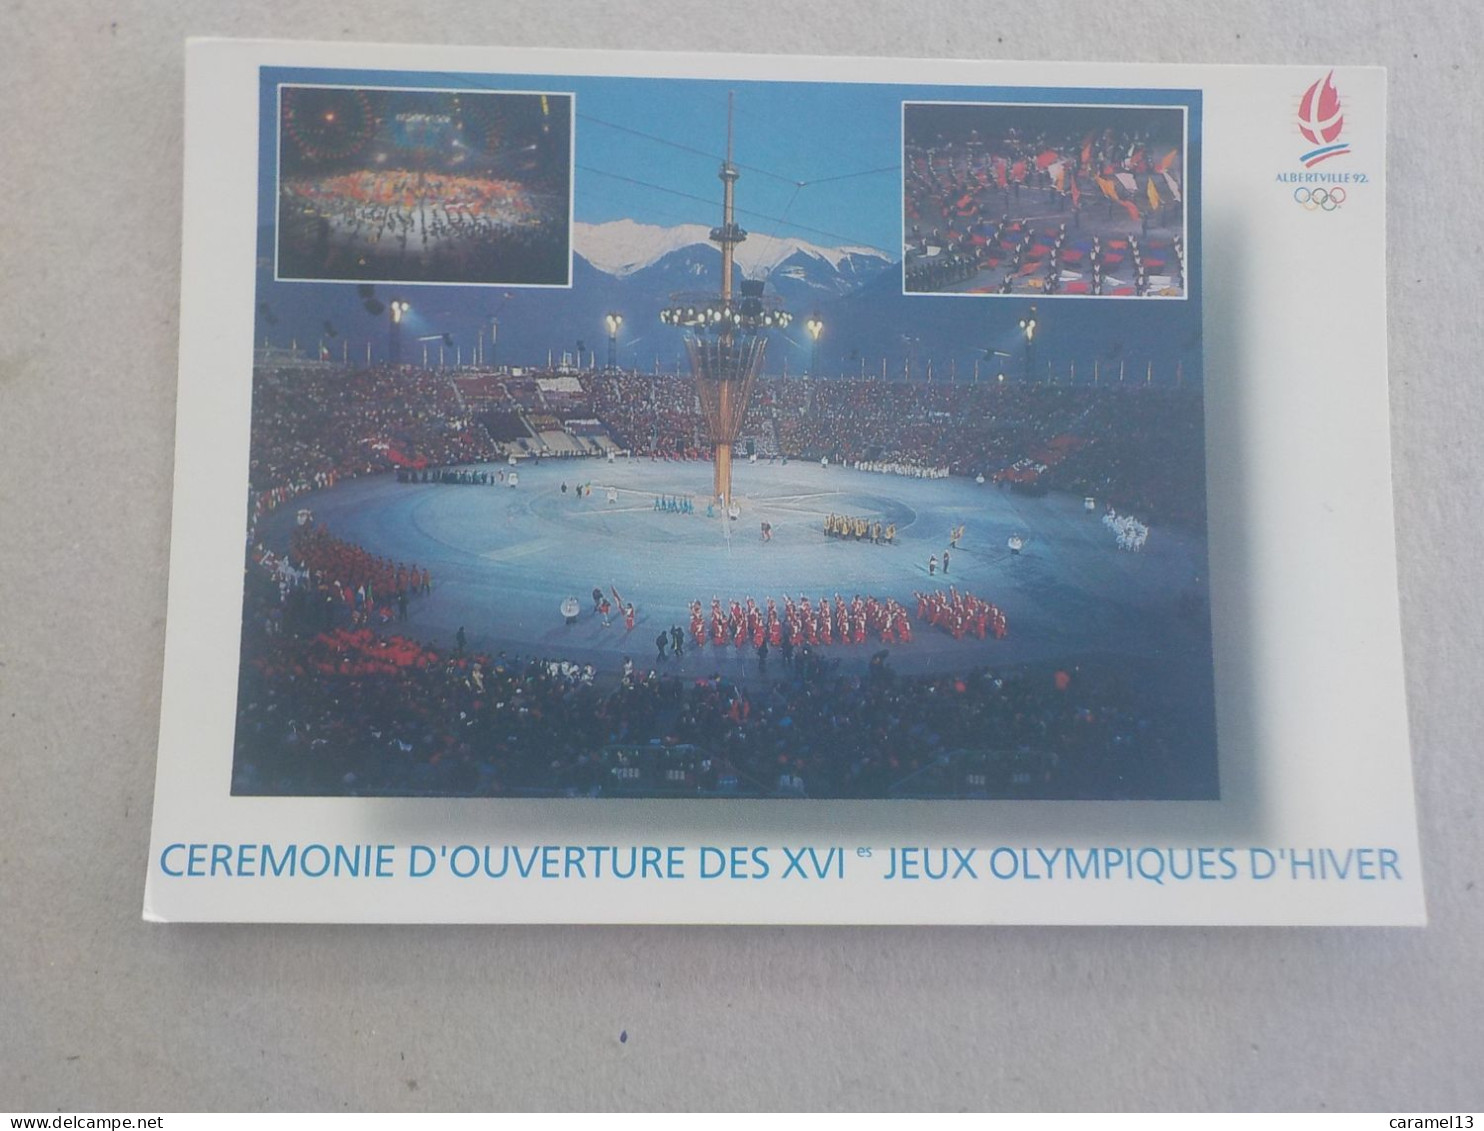 CPSM -  AU PLUS RAPIDE - JEUX OLYMPIQUES CEREMONIE D OUVERTURE DES JEUX D HIVERS ALBERVILLE 92   -  VOYAGEE NON TIMBREE - Olympic Games